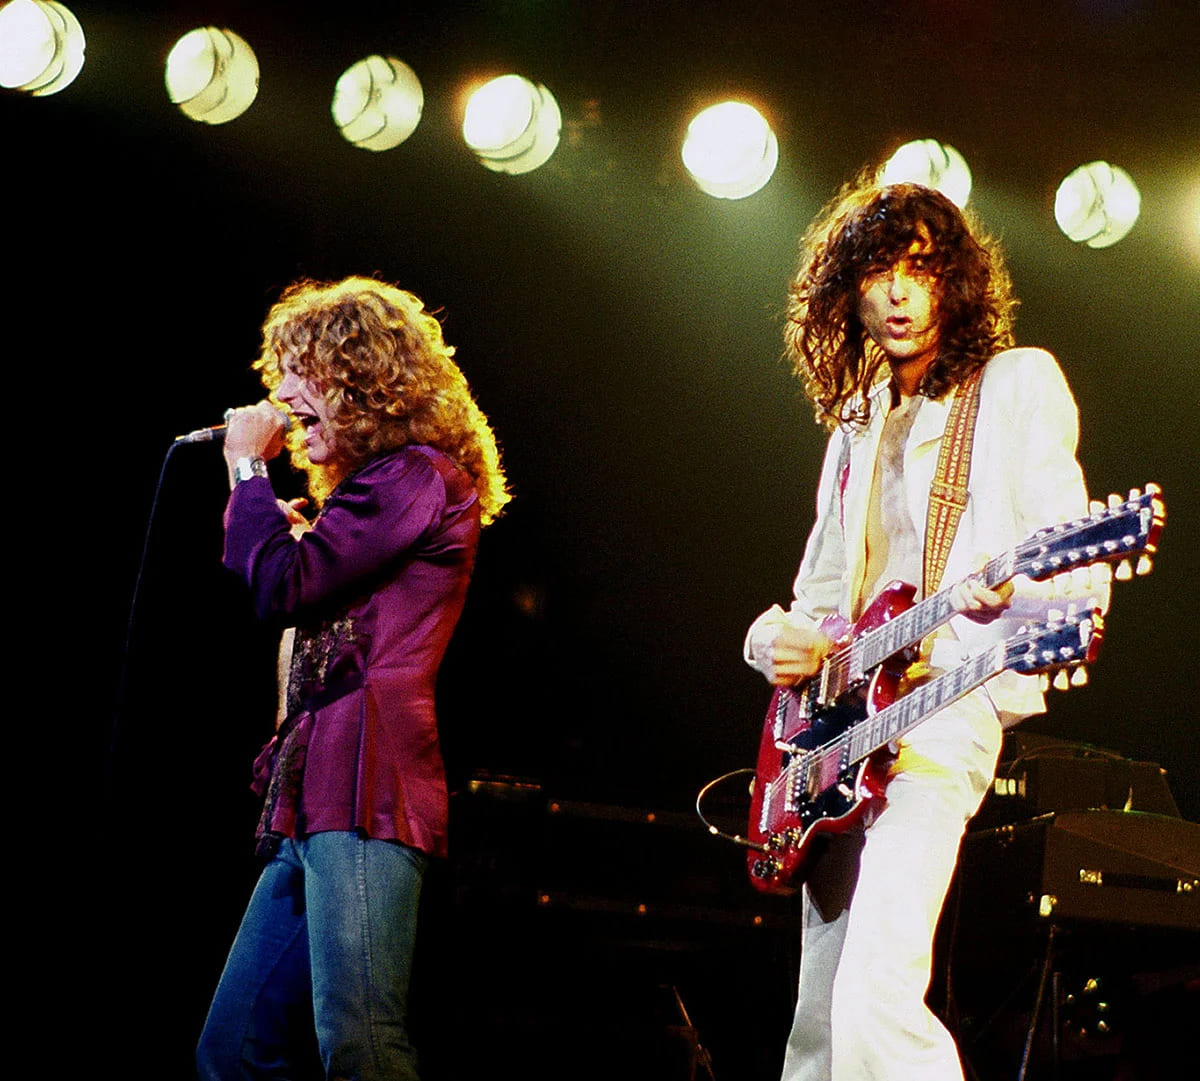 Robert Plant (izquierda) y Jimmy Page (derecha) de Led Zeppelin, en un concierto en Chicago, Illinois. Foto: Jim Sammaria